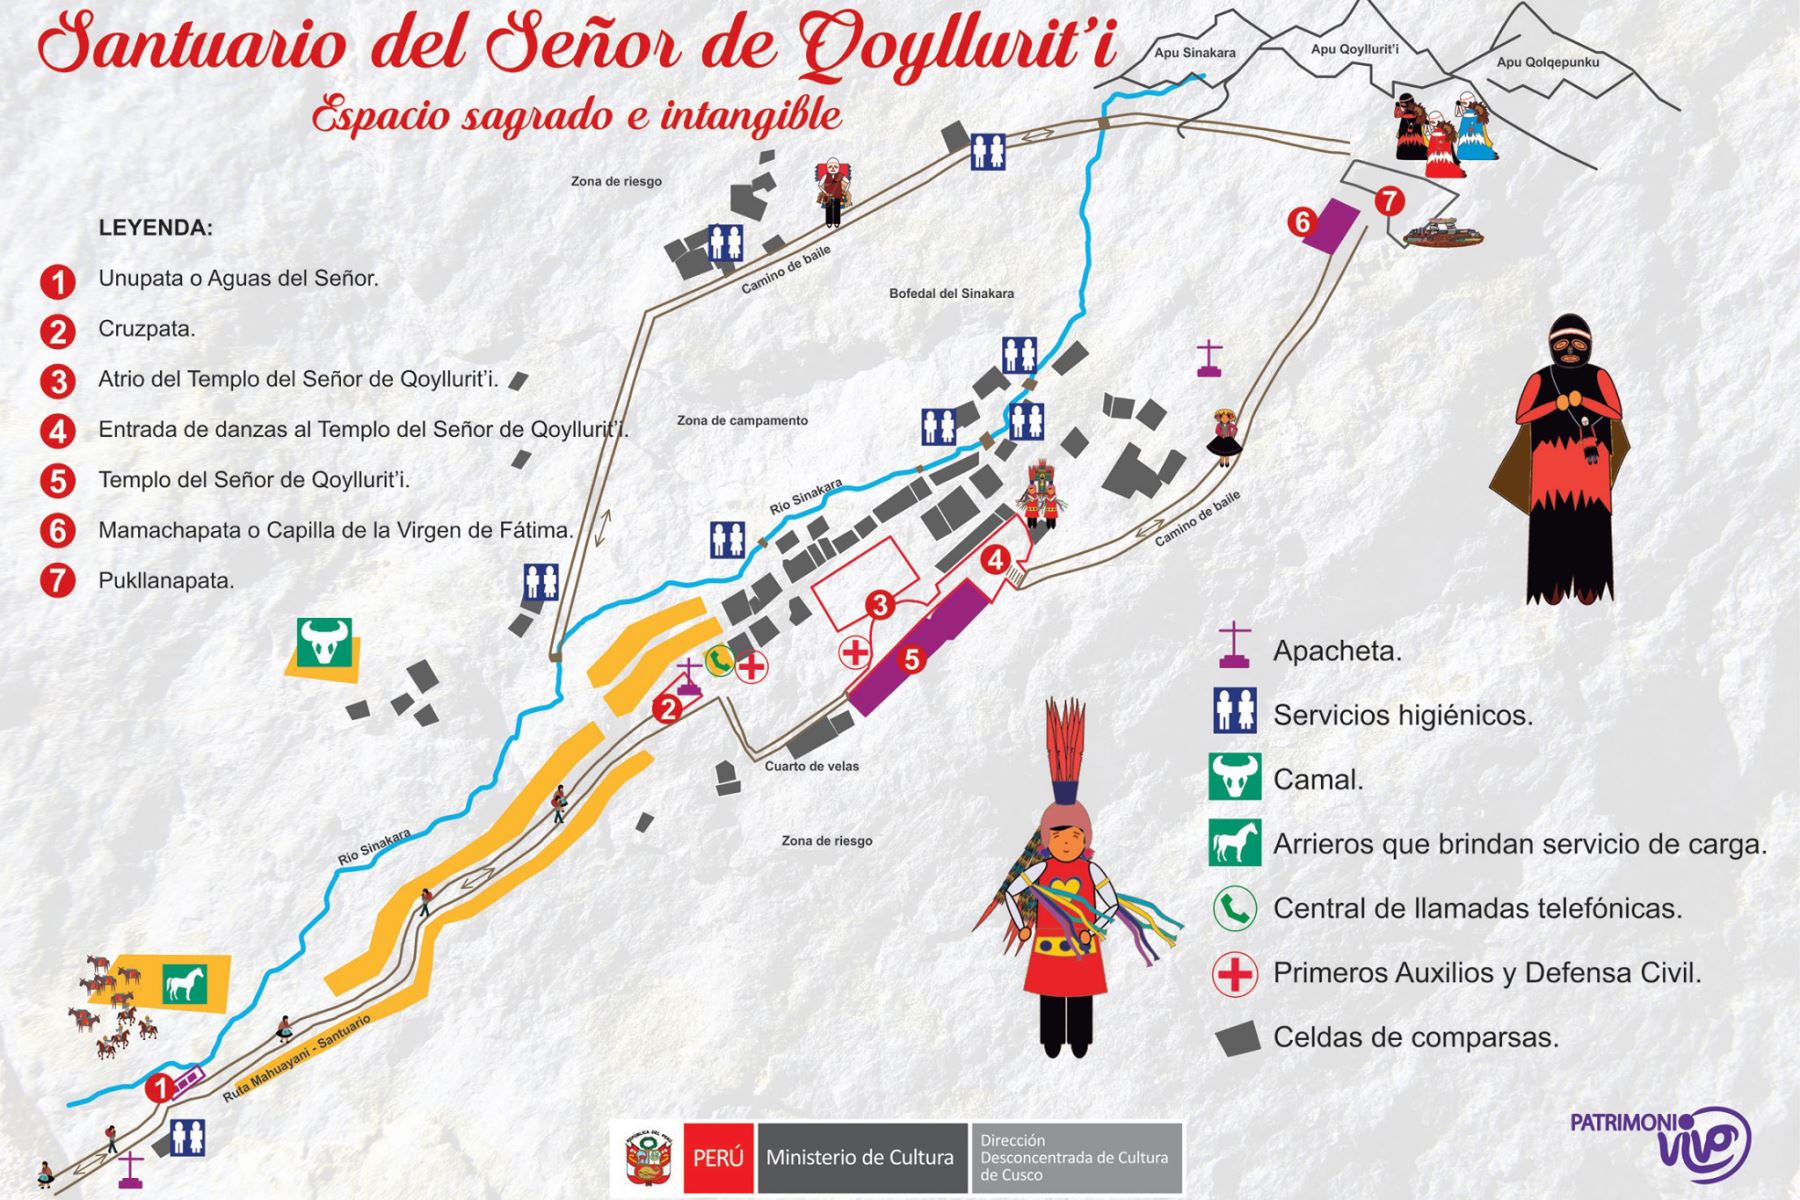 Esta es la ruta que deberán seguir los fieles y turistas que peregrinarán como parte de la festividad del Señor de Qoyllur Riti, en la región Cusco.